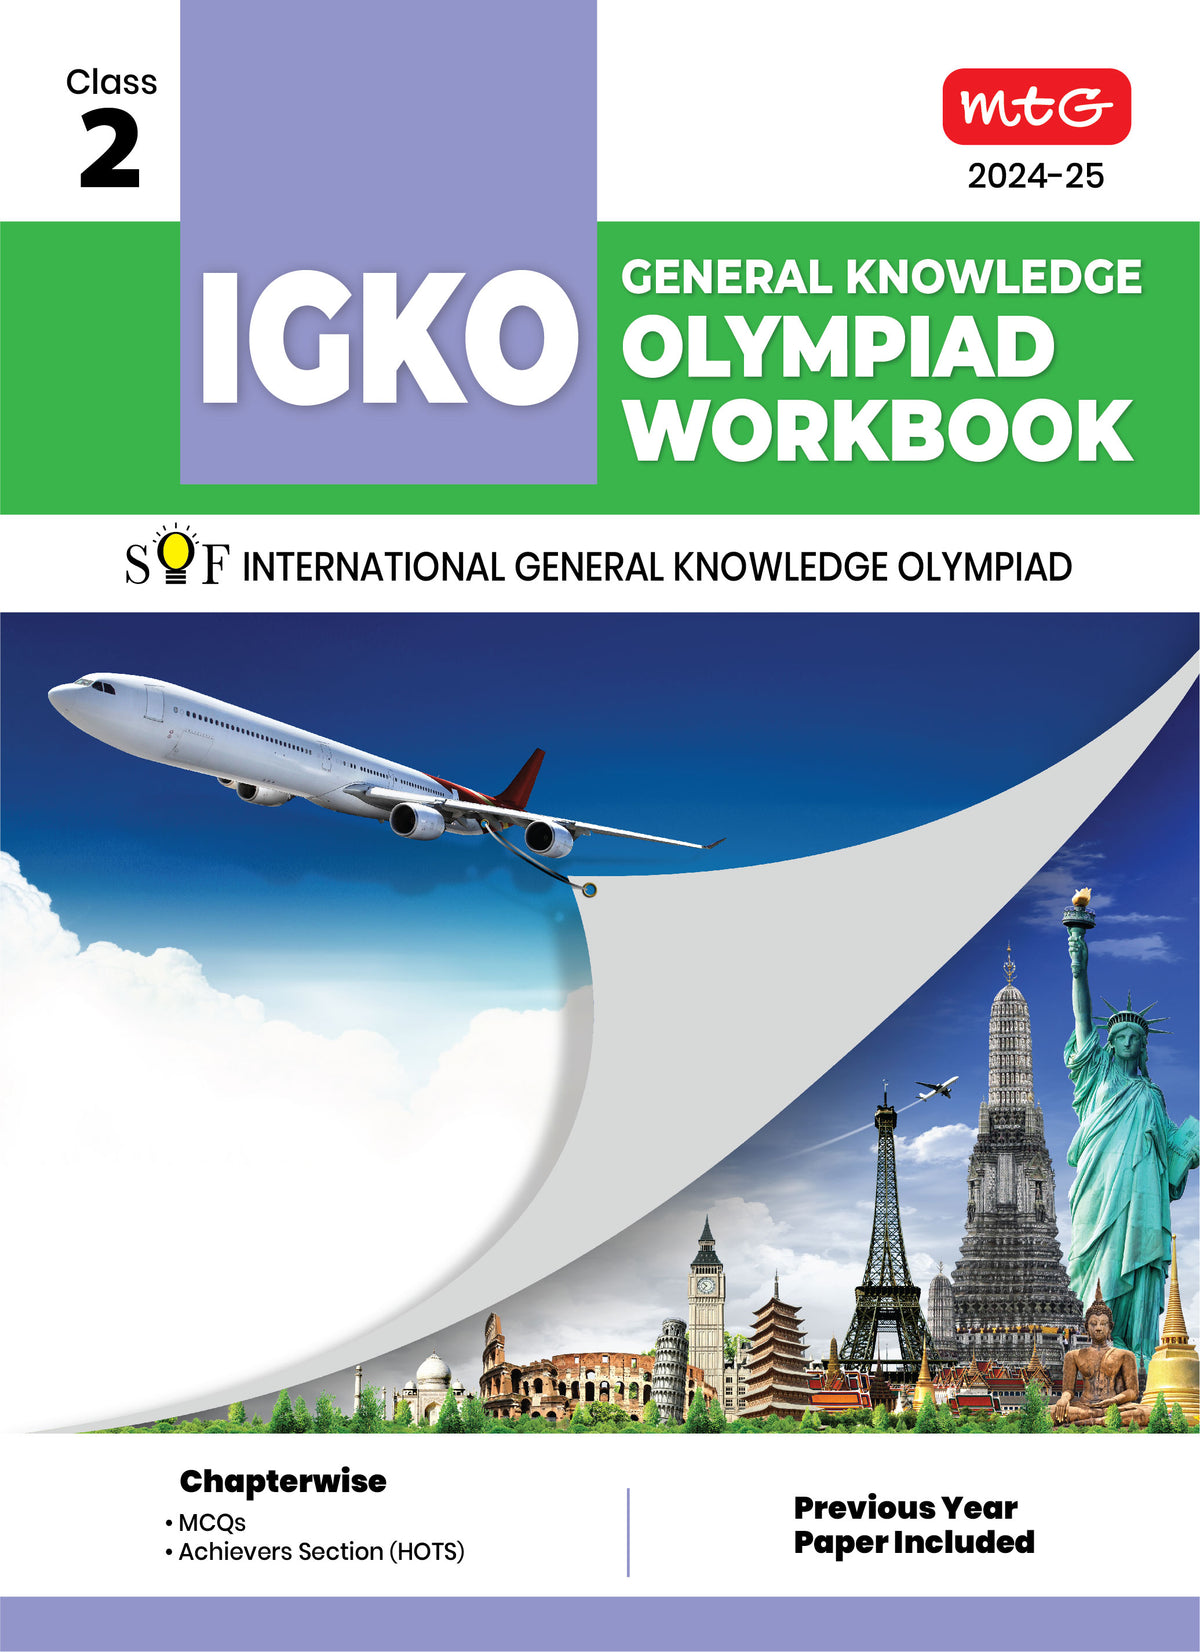 MTG GENERAL KNOWLEDGE OLYMPIAD WORKBOOK IGKO 2